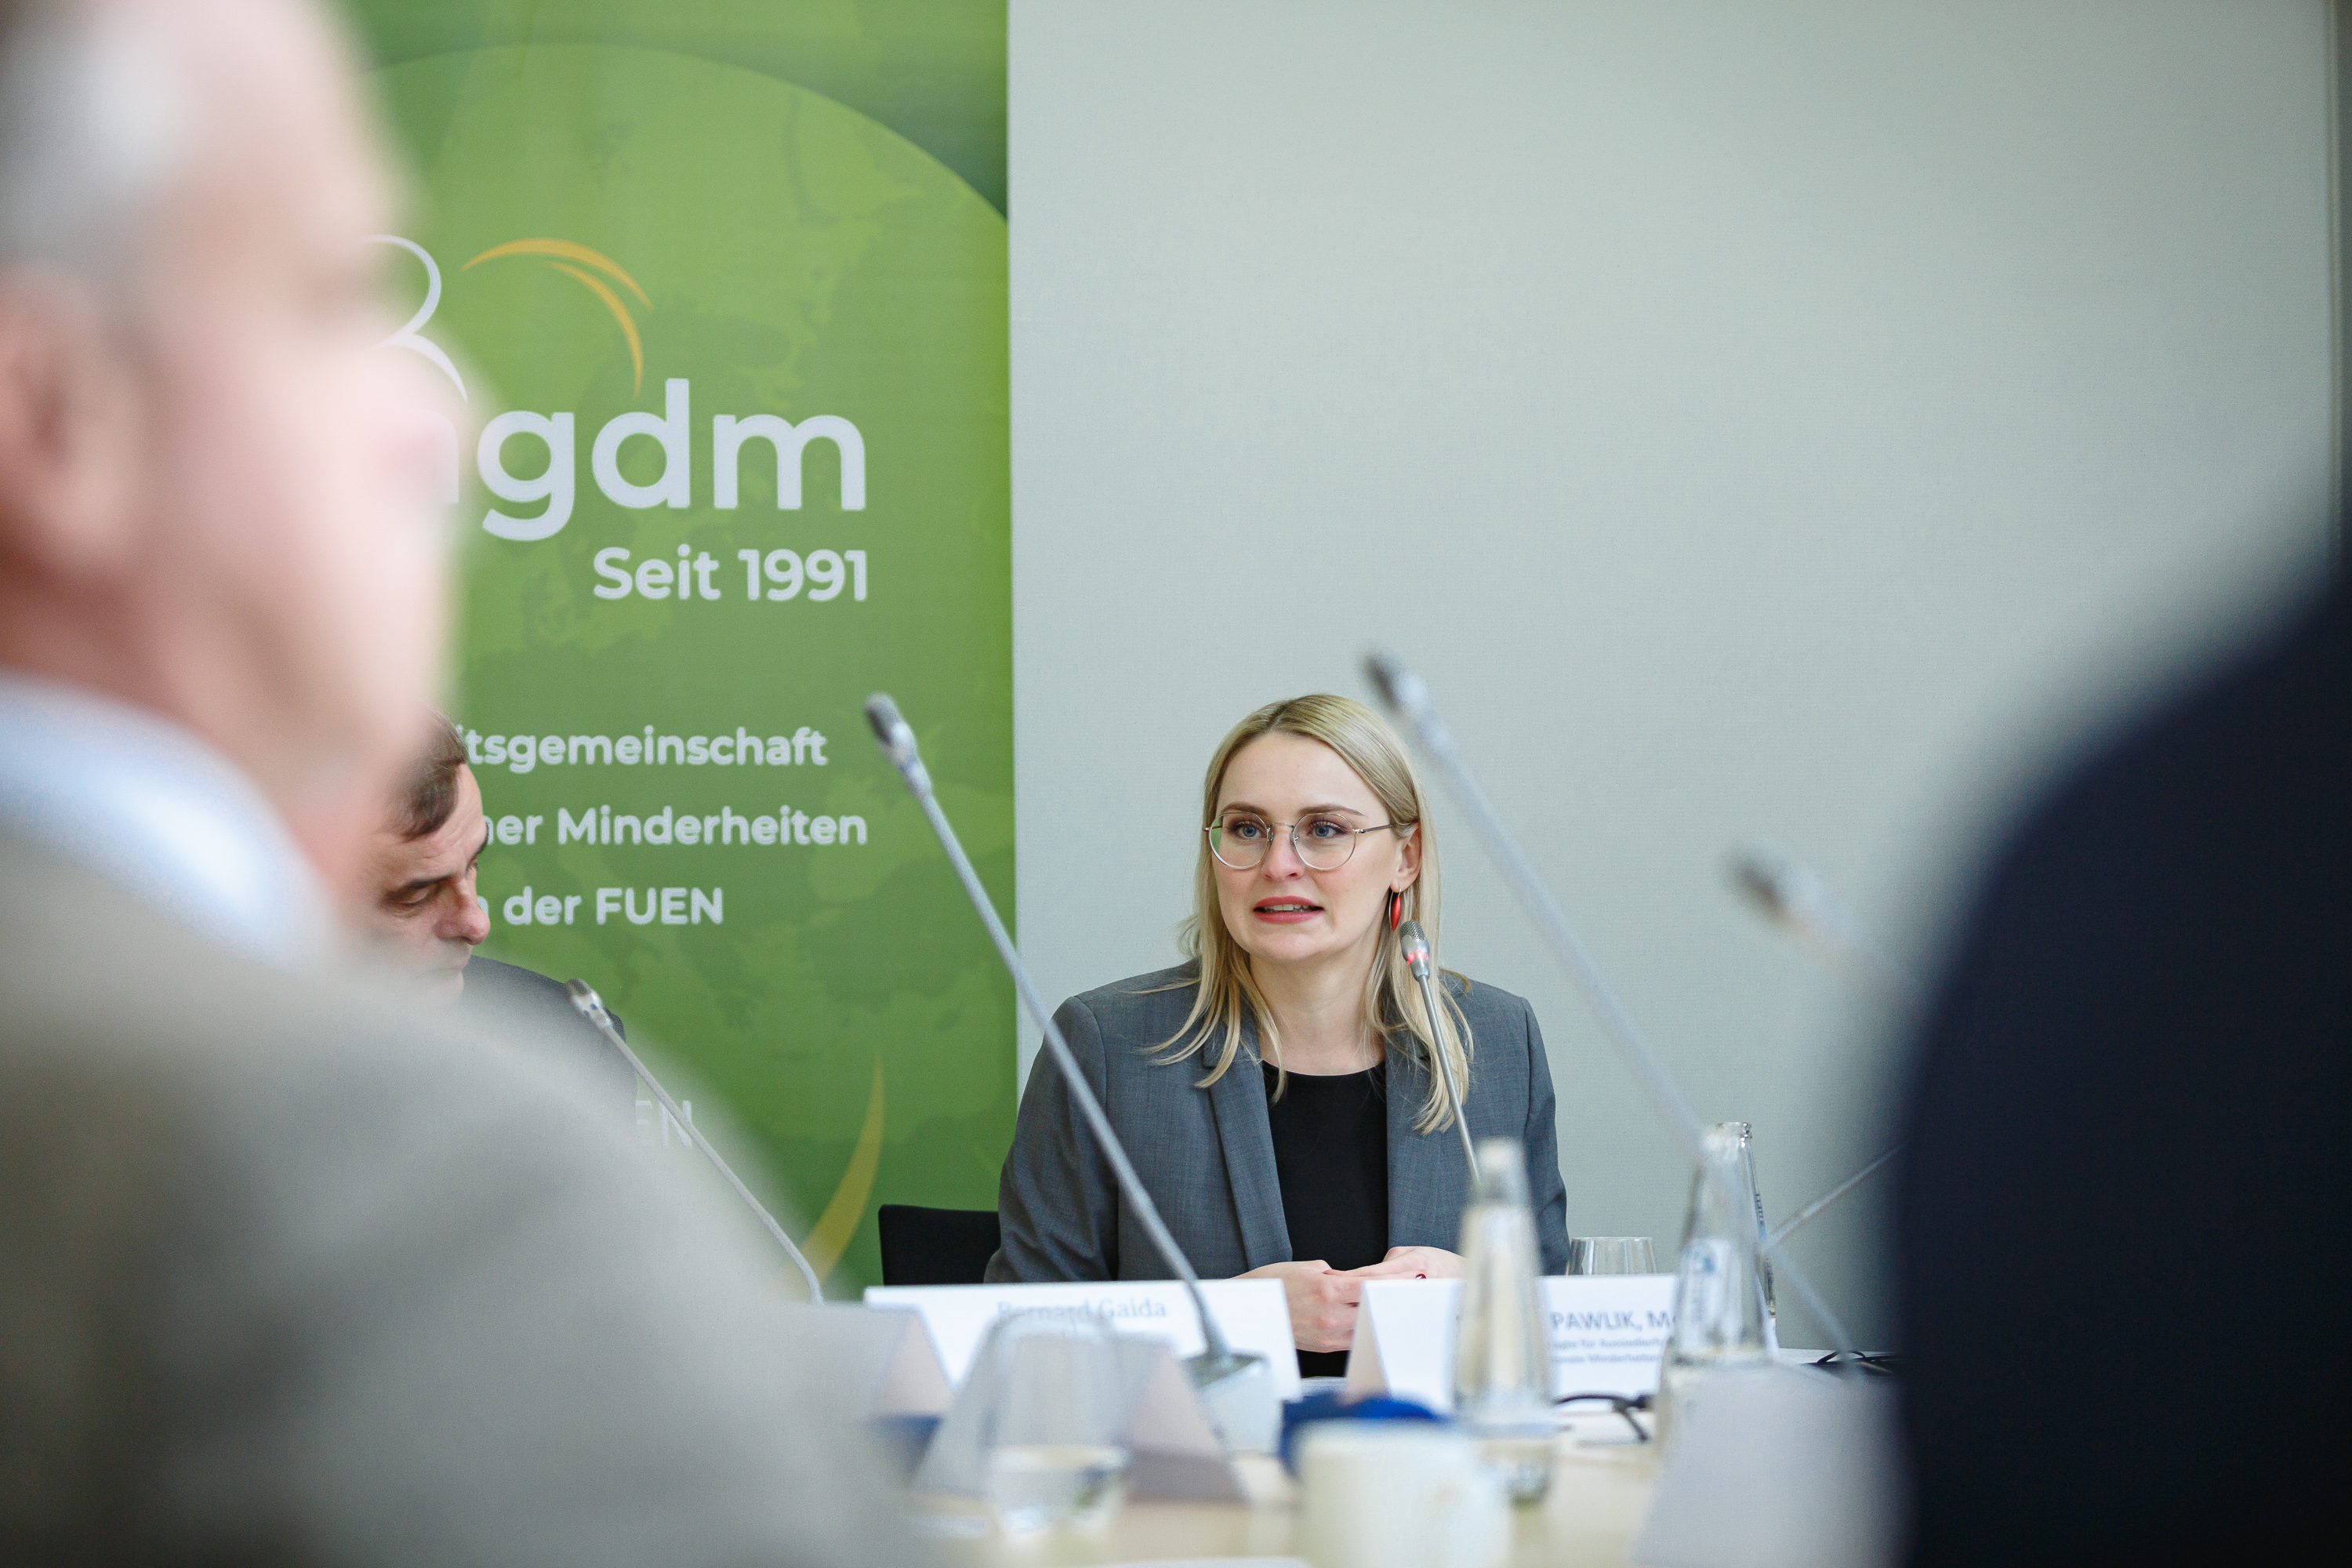 Deutsche Minderheiten am Puls der deutschen Minderheitenpolitik: AGDM-Jahrestagung startet heute in Berlin  